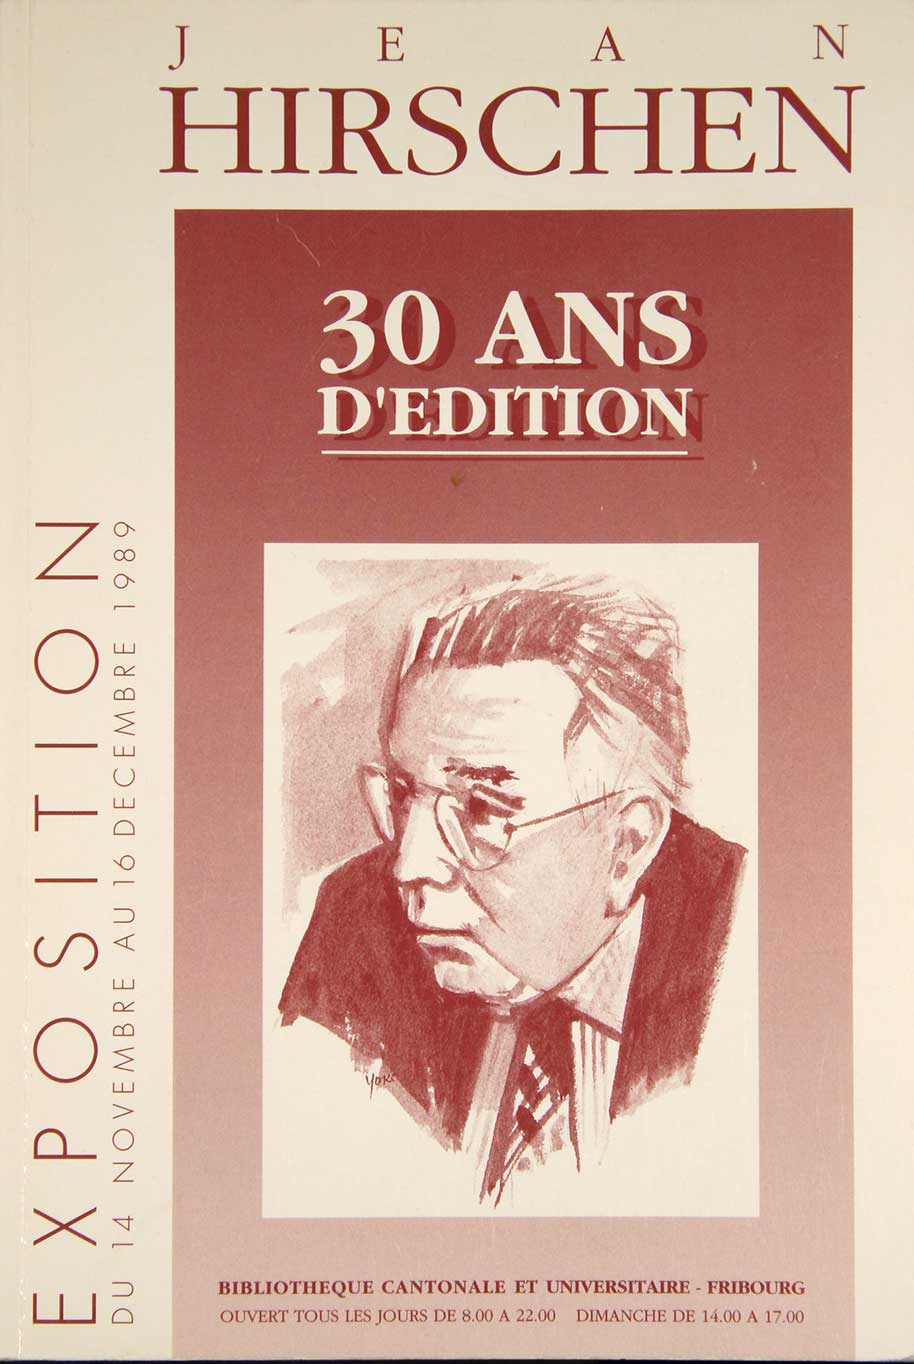 HIRSCHEN. - - Jean Hirschen. (Fondateur et directeur de Office du Livre  Fribourg) 30 ans d'dition. Catalogue.